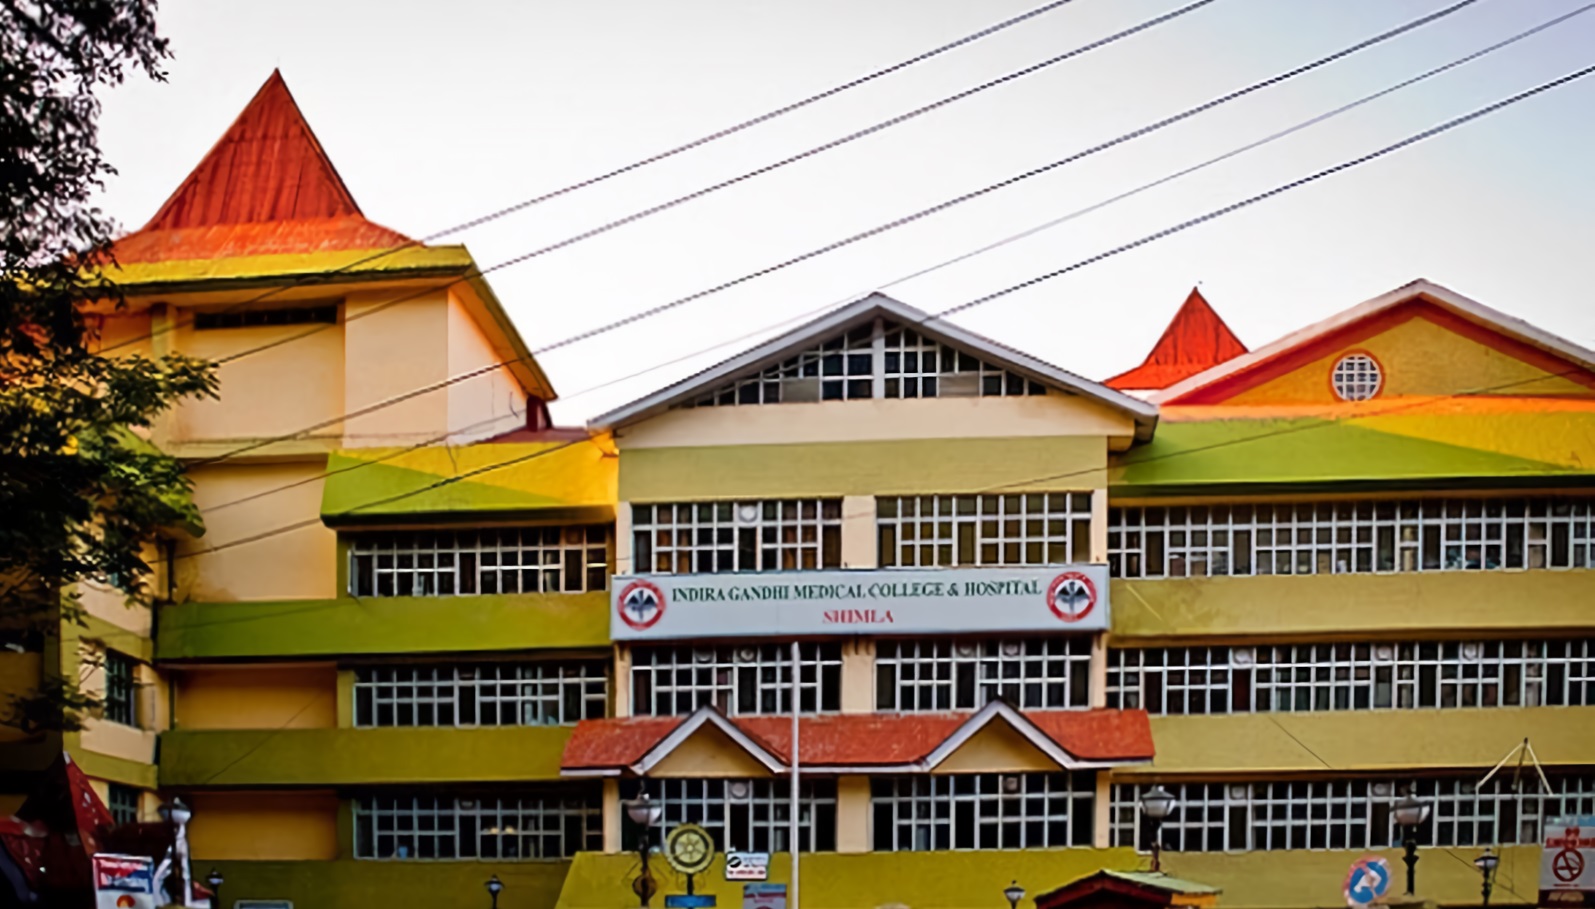 Indira Gandhi Medical College & Hospital - Shimla